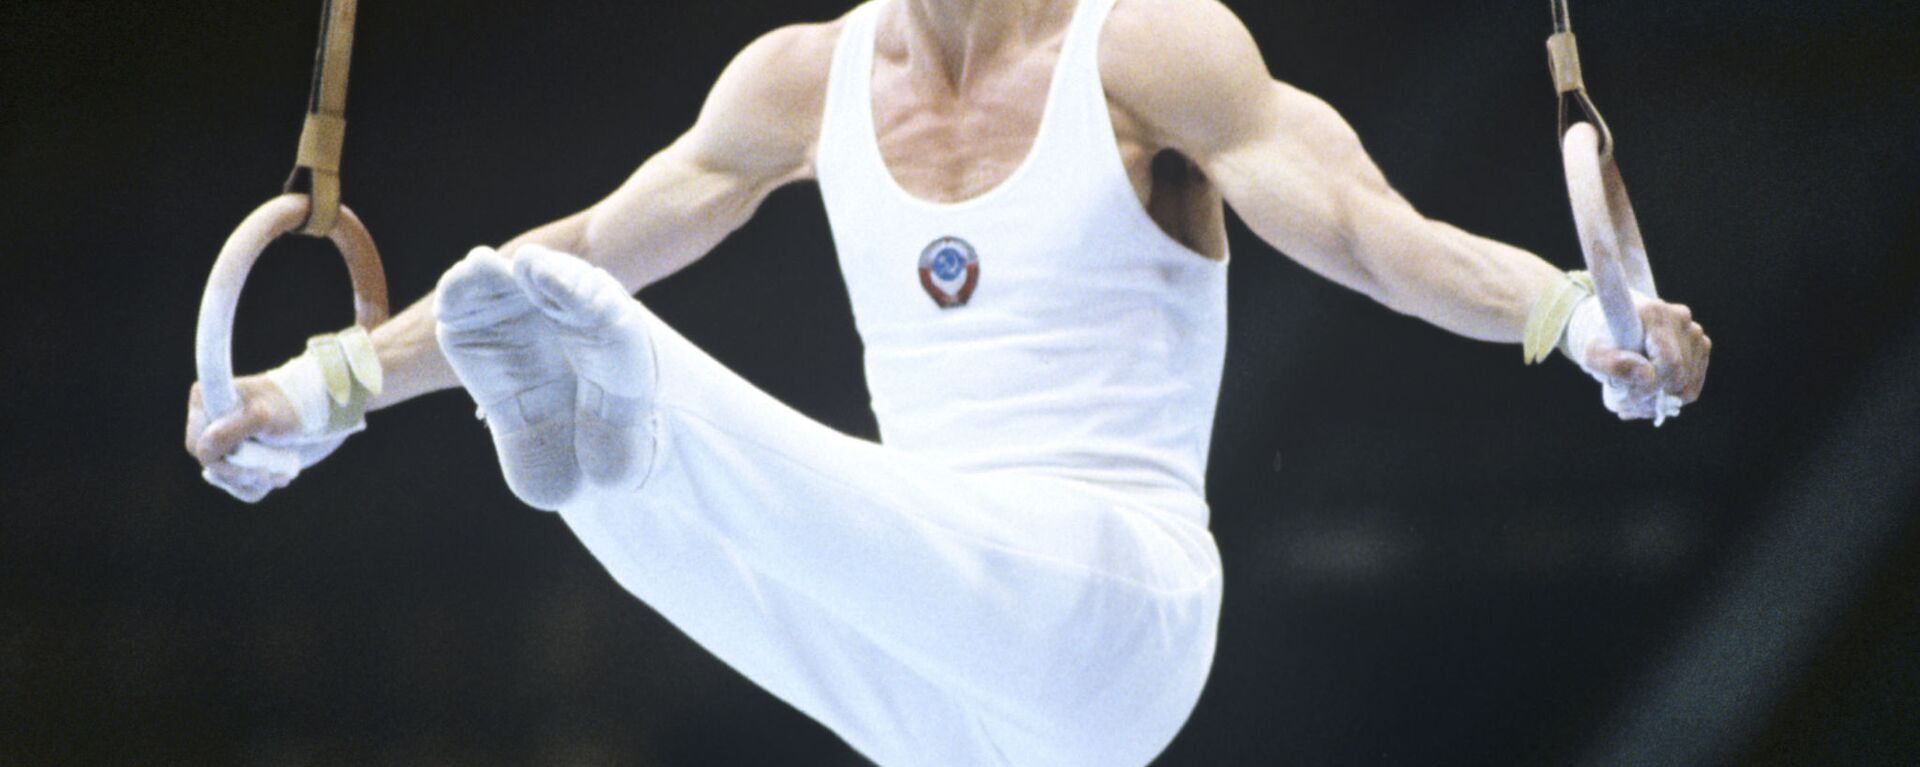 Абсолютный чемпион СССР 1979 года по спортивной гимнастике, олимпийский чемпион 1980 года в командном первенстве Эдуард Азарян - Sputnik Արմենիա, 1920, 22.07.2020